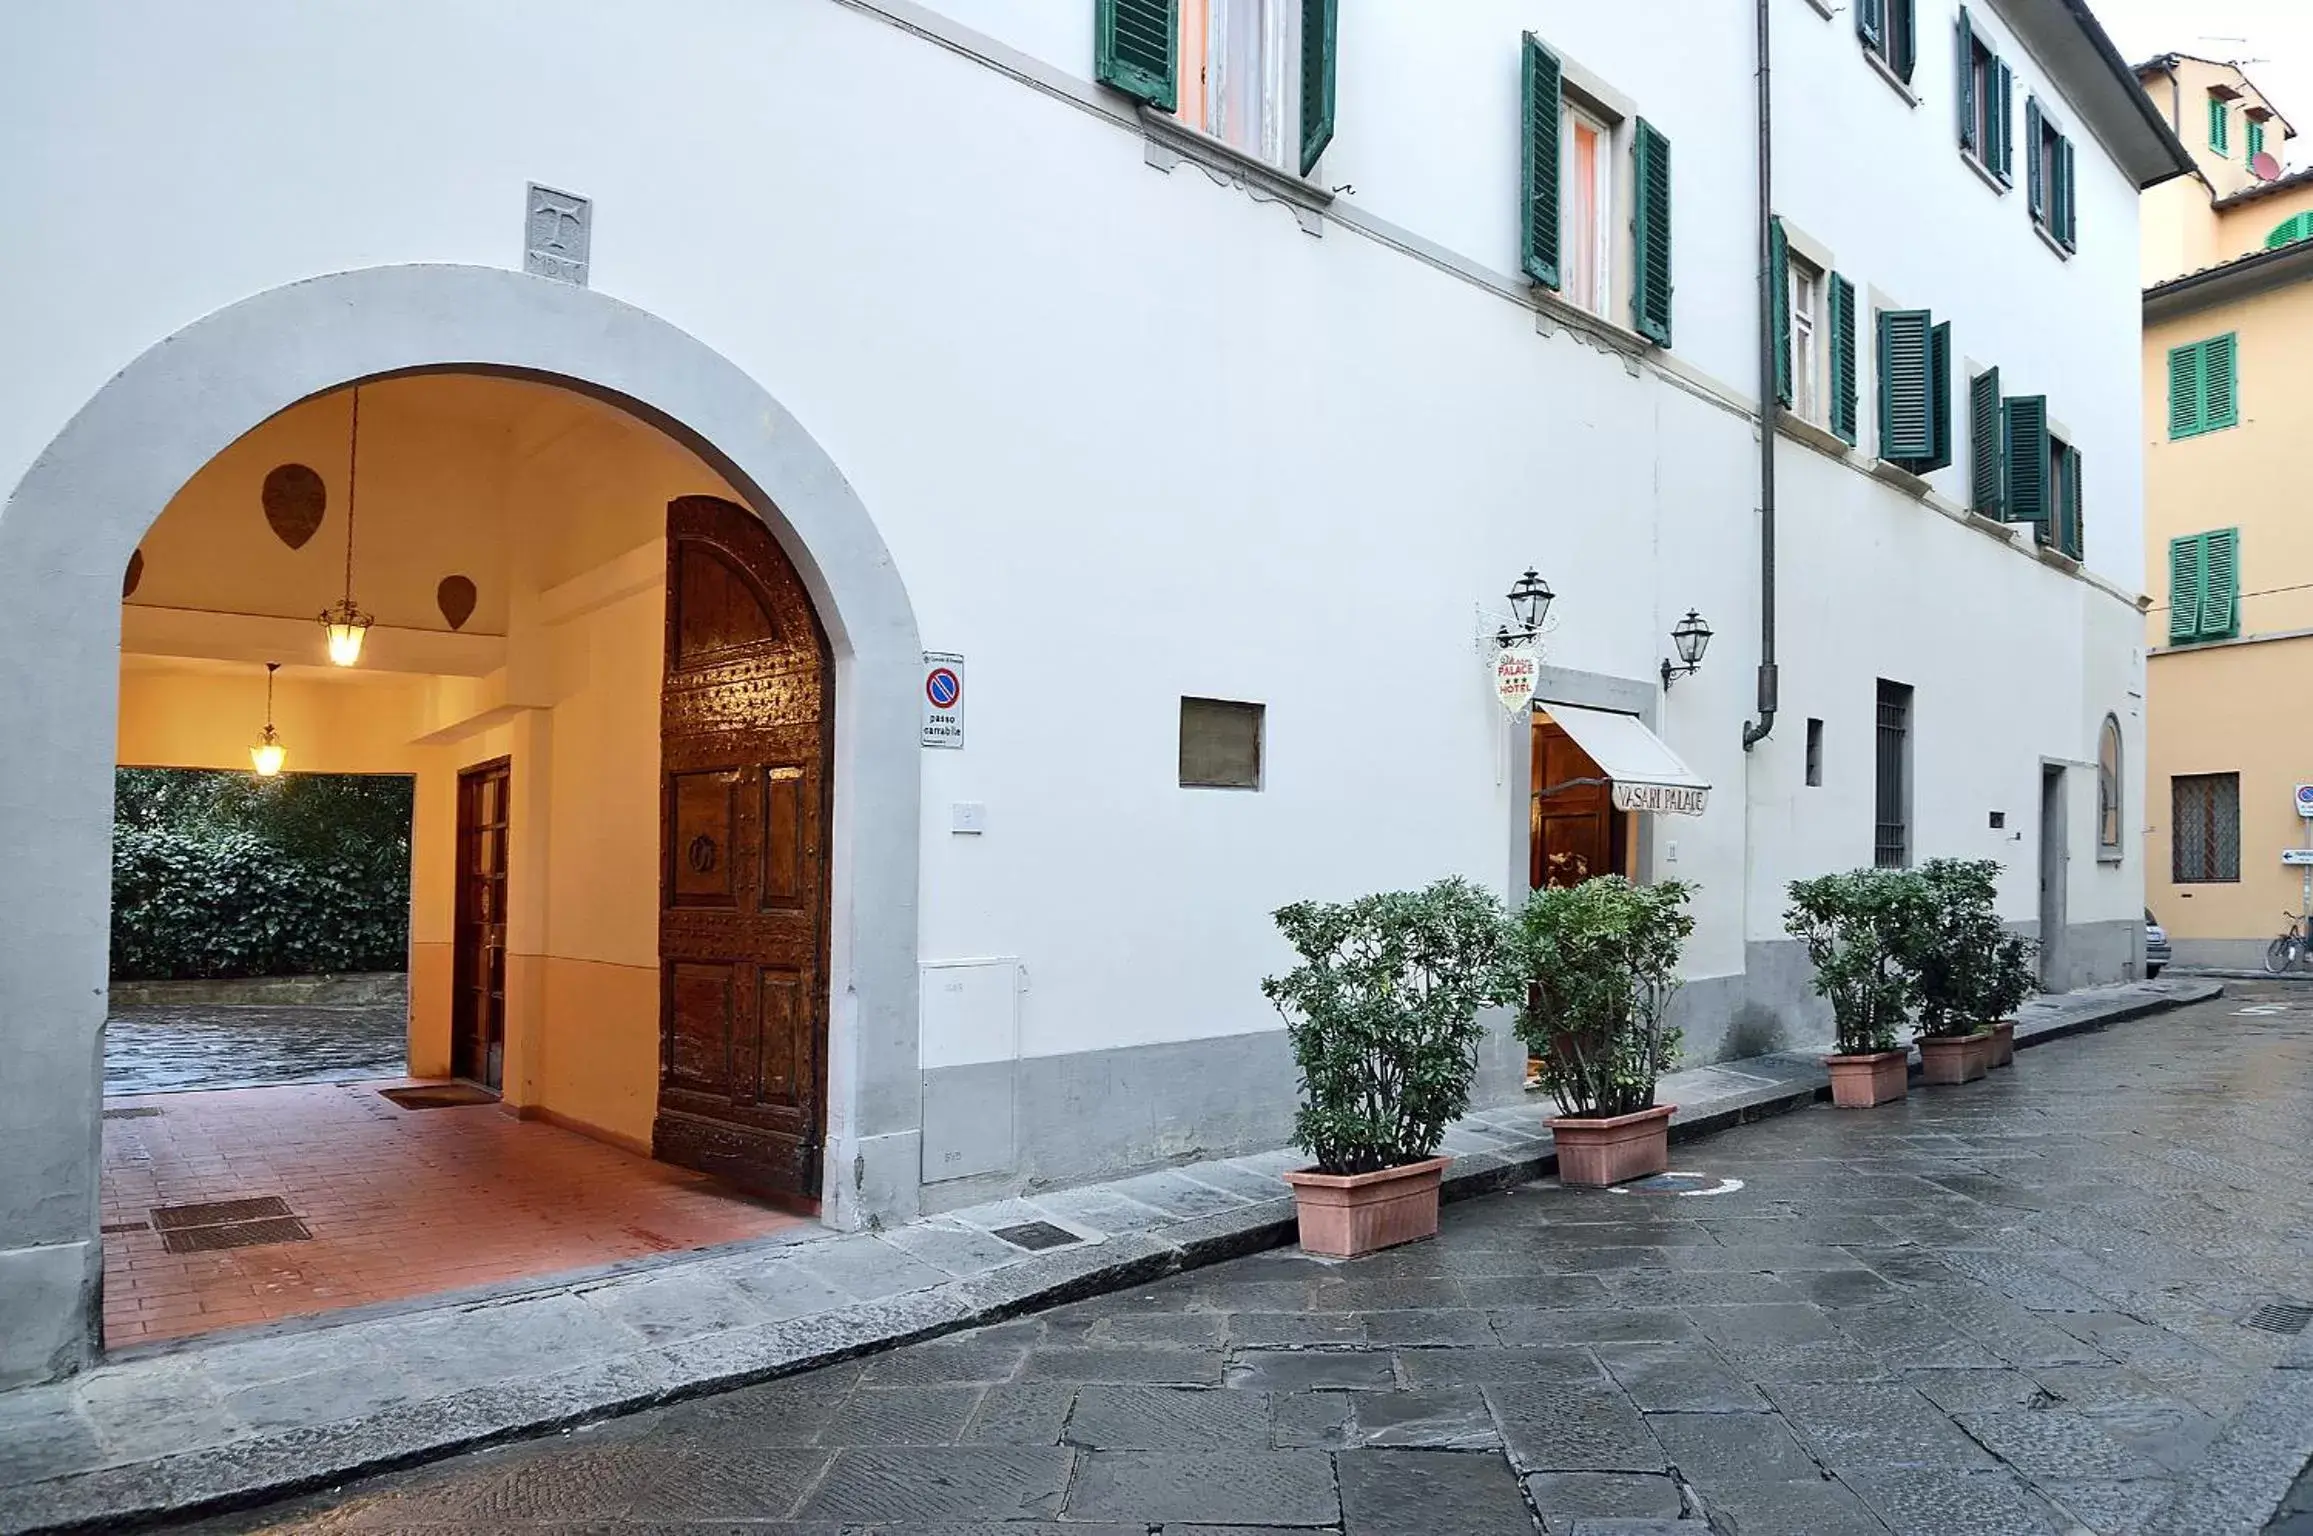 Facade/entrance in Hotel Vasari